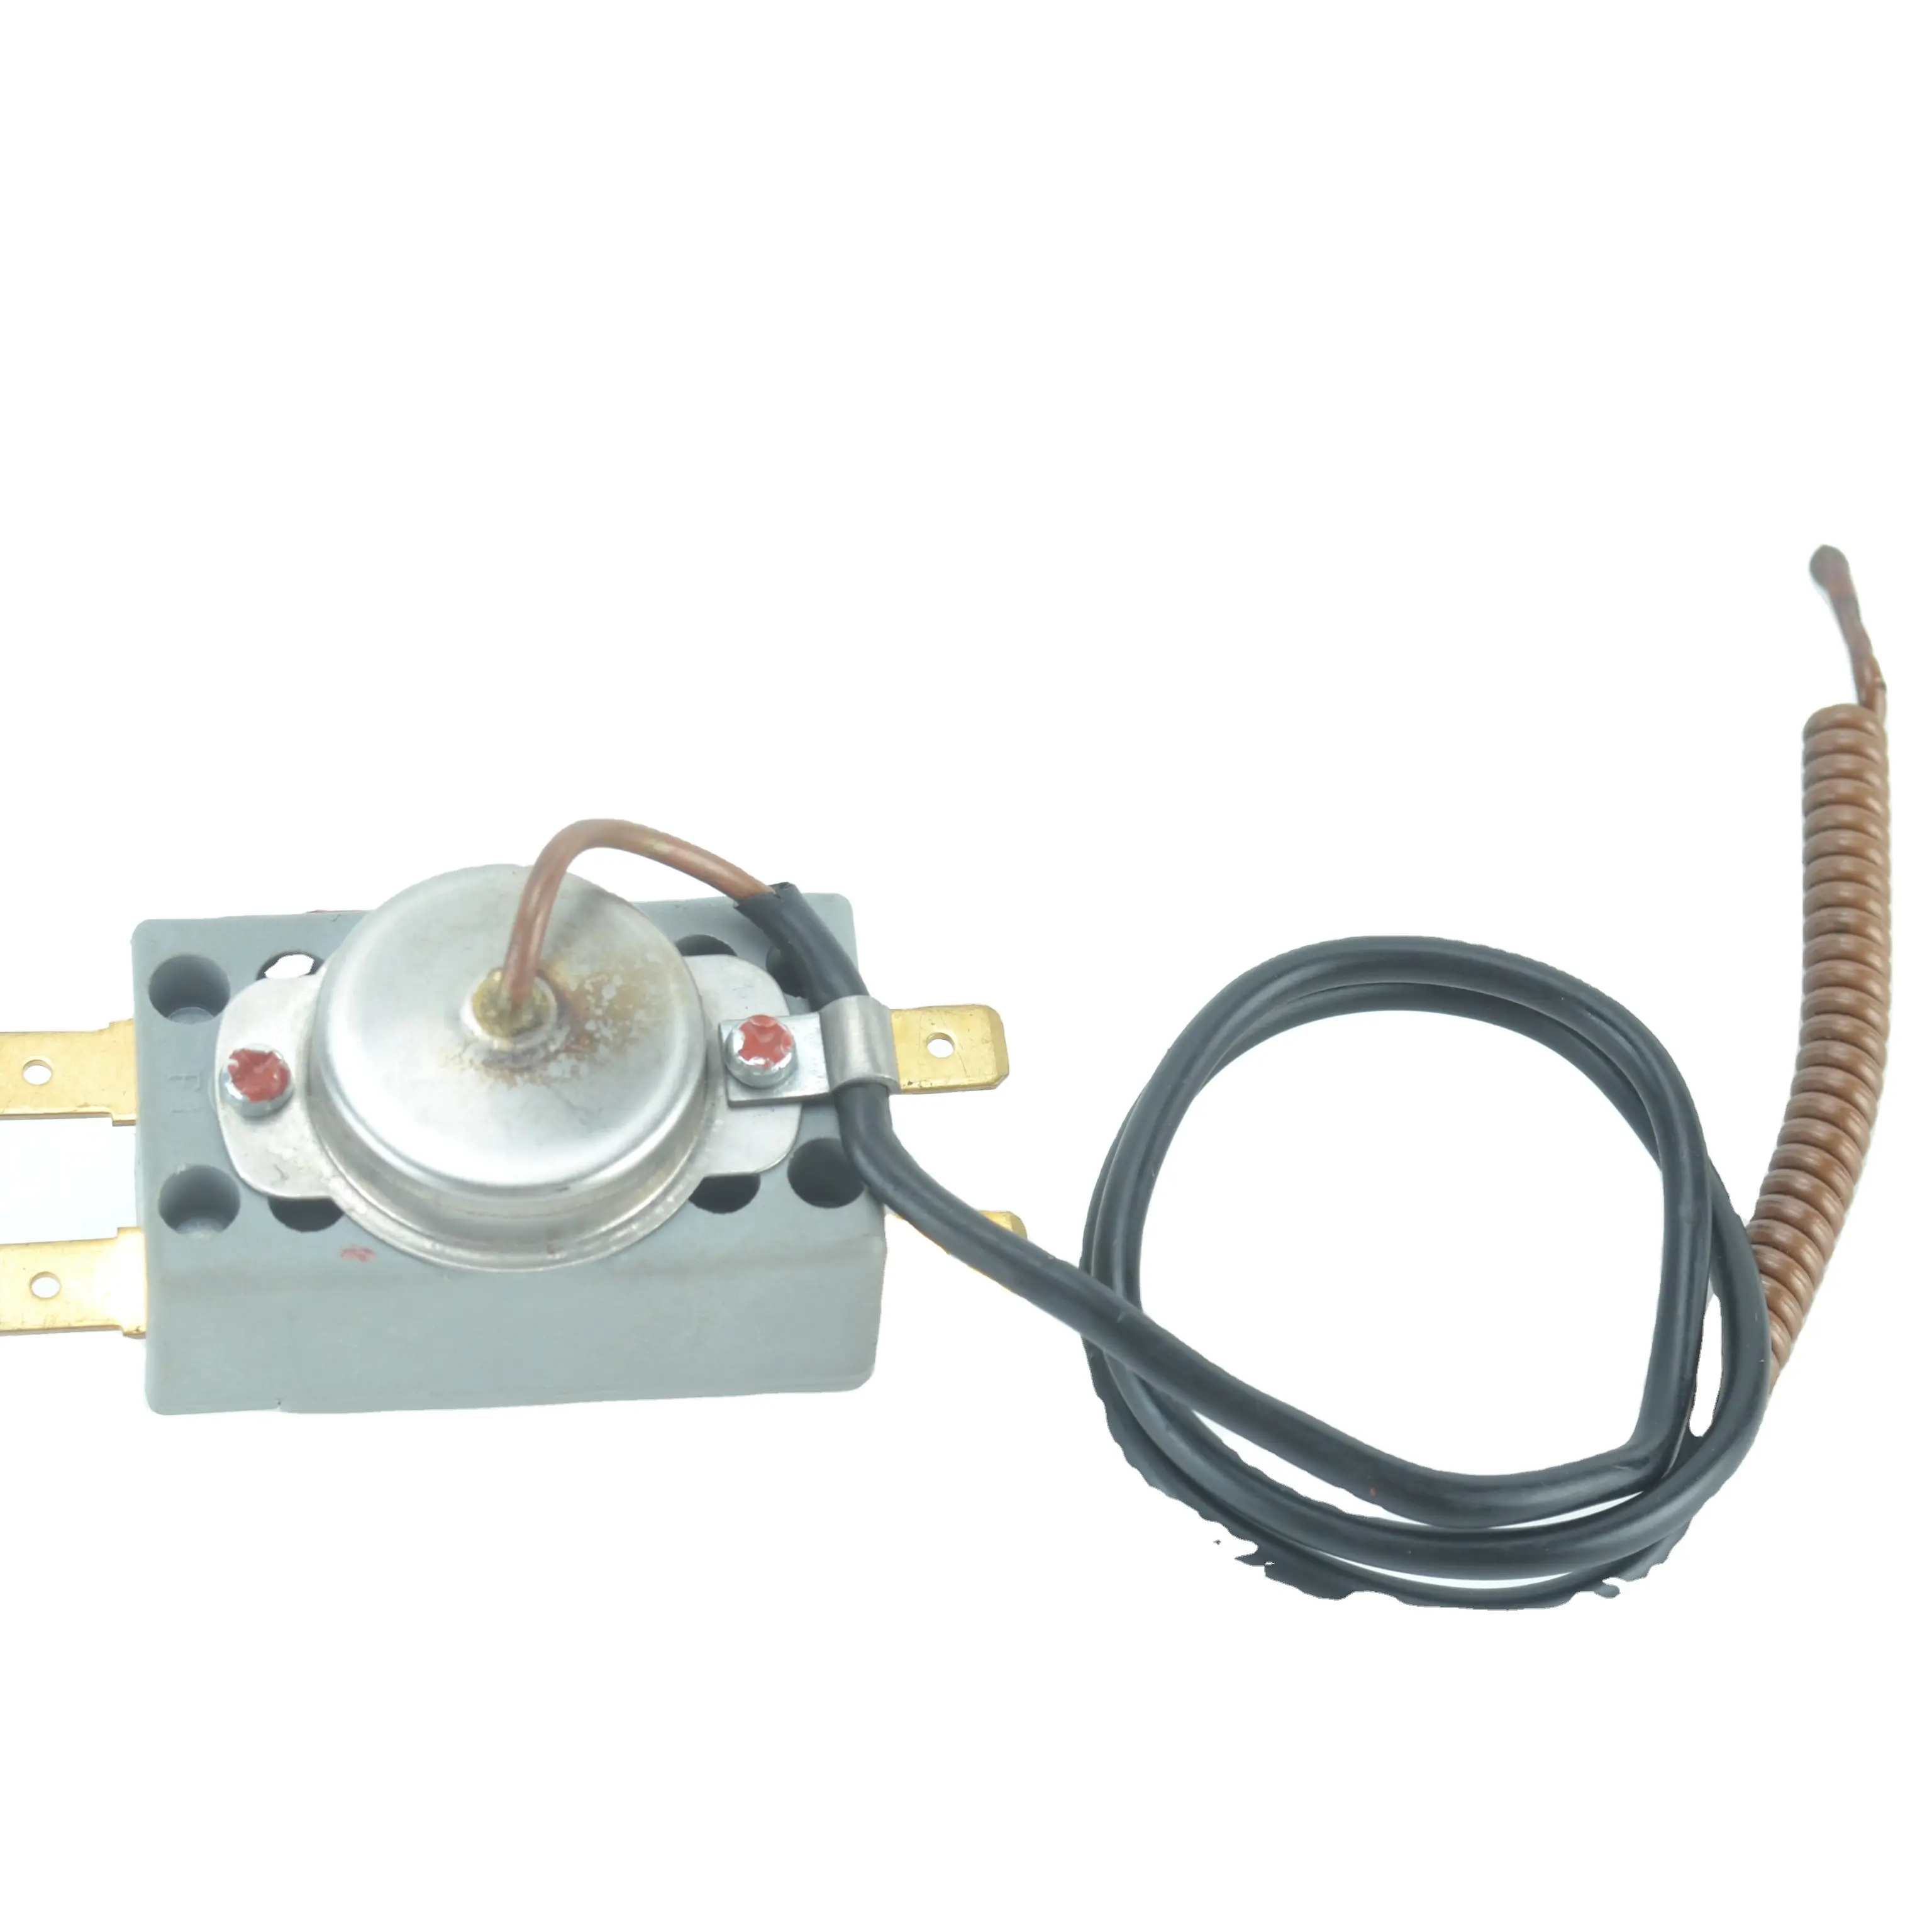 Sunchonglic régulateur de température 220V thermostat de chauffe-eau électrique pour pièces de chauffe-eau électrique